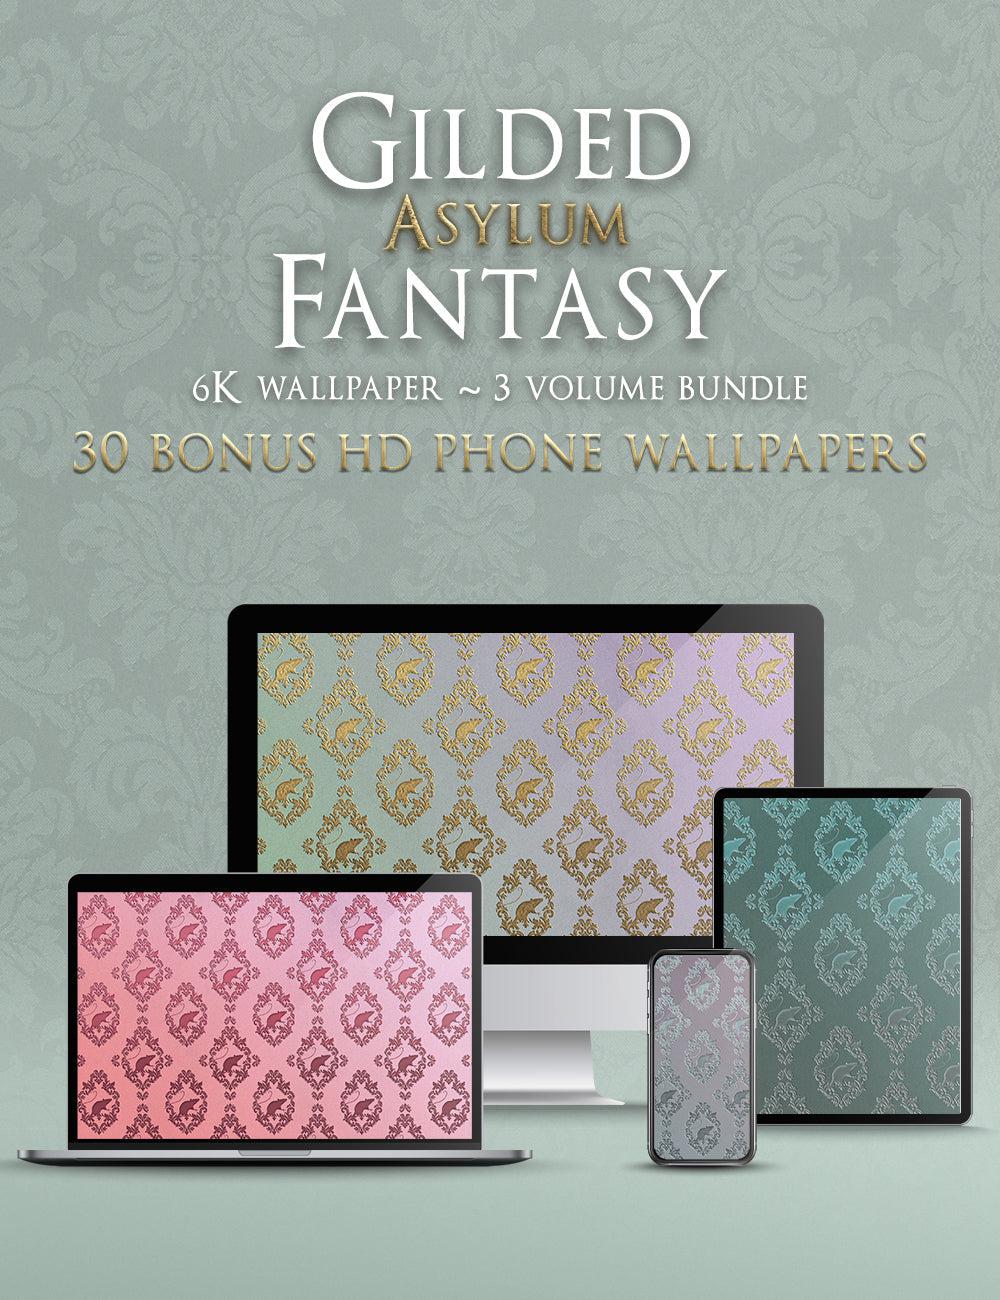 Gilded Asylum Fantasy 6K Wallpaper Pack Bundle + FREE Phone Wallpapers